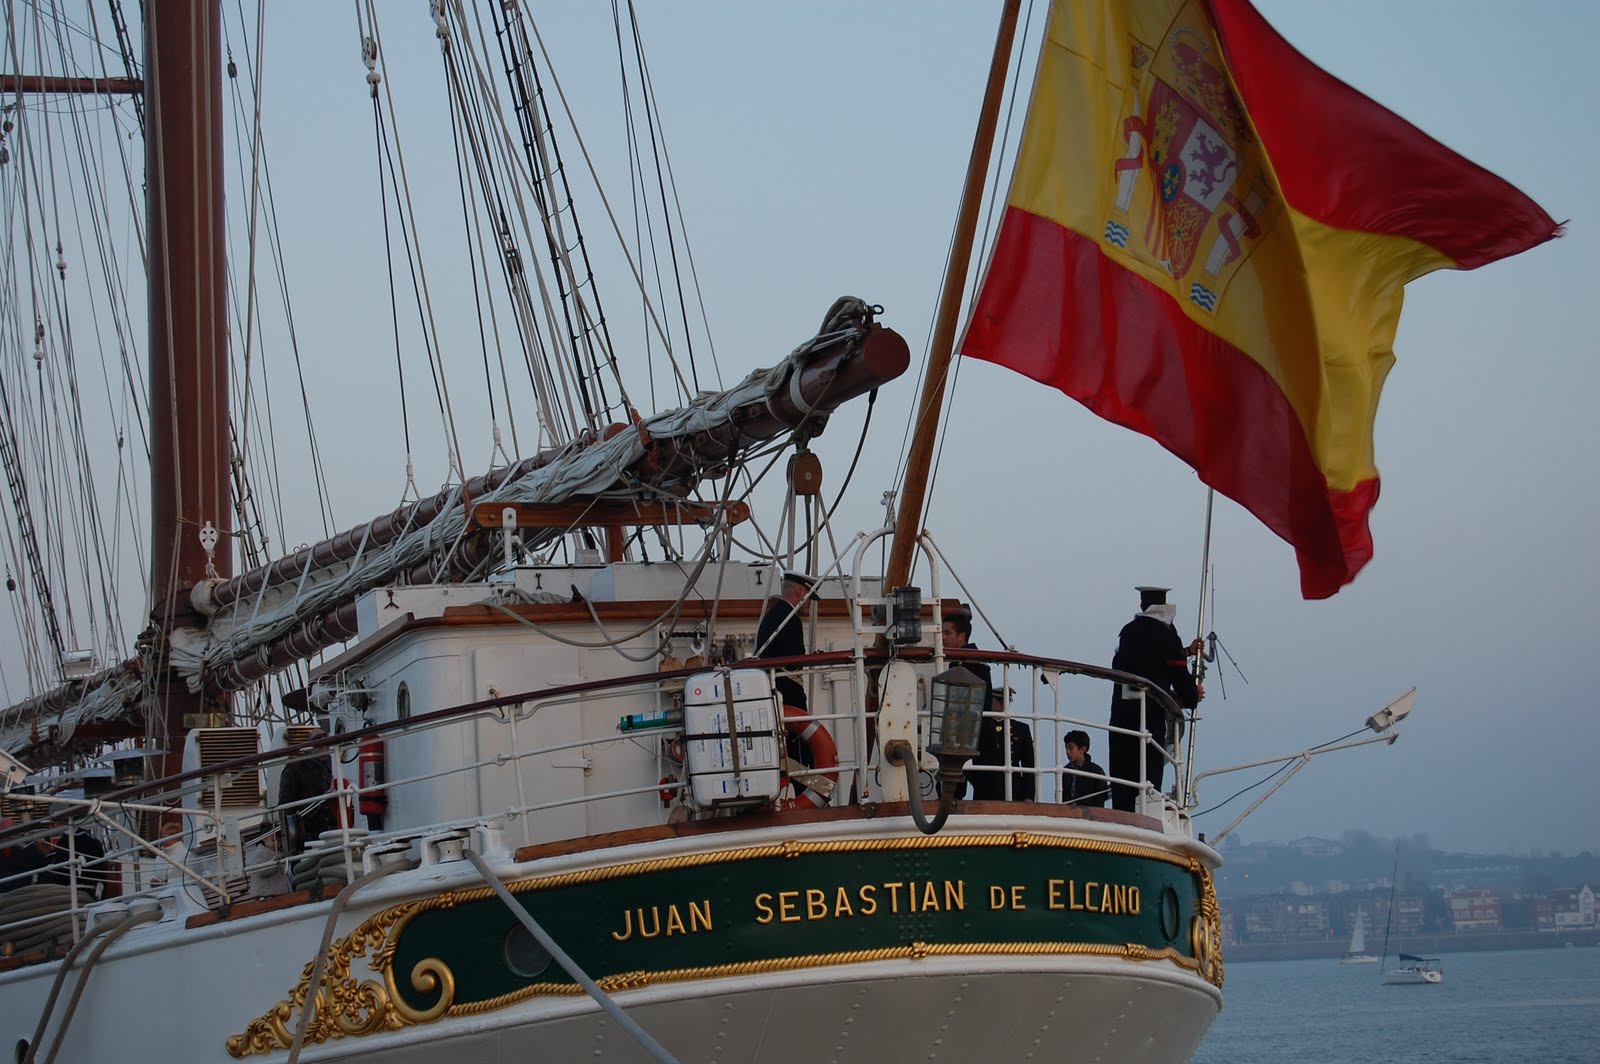 Эспаньела. Хуан Себастьян Элькано шхуна. Хуан Себастьян Элькано корабль. Хуан Себастьян Элькано испанский моряк. Испанский корабль.